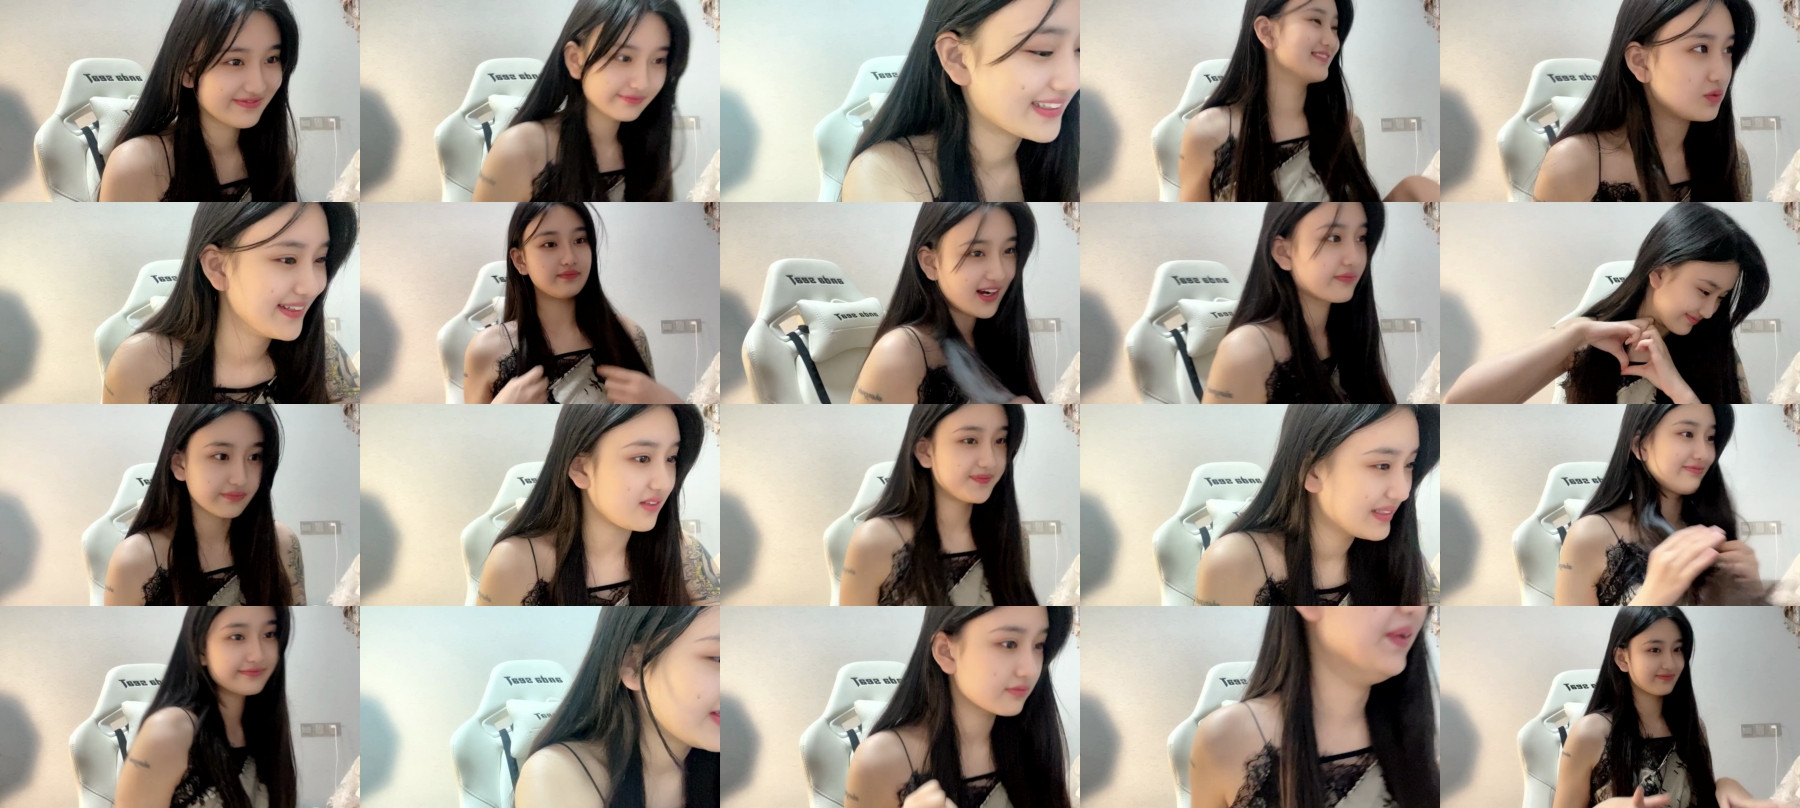 Cute asian cams girls fan compilation